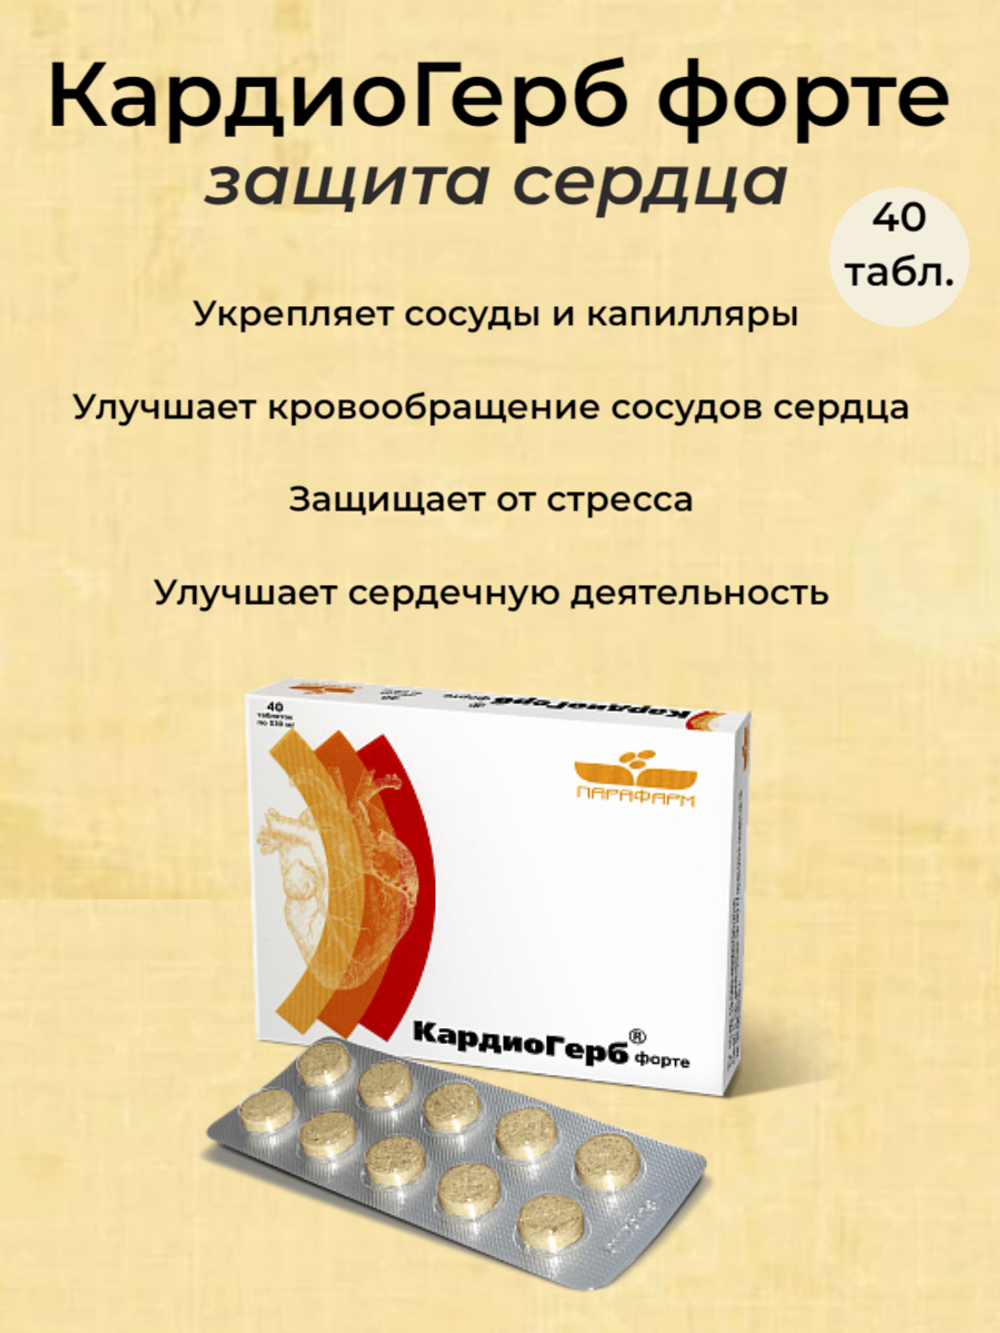 КардиоГерб-форте - защита сердца, 40 таблеток по 350 мг